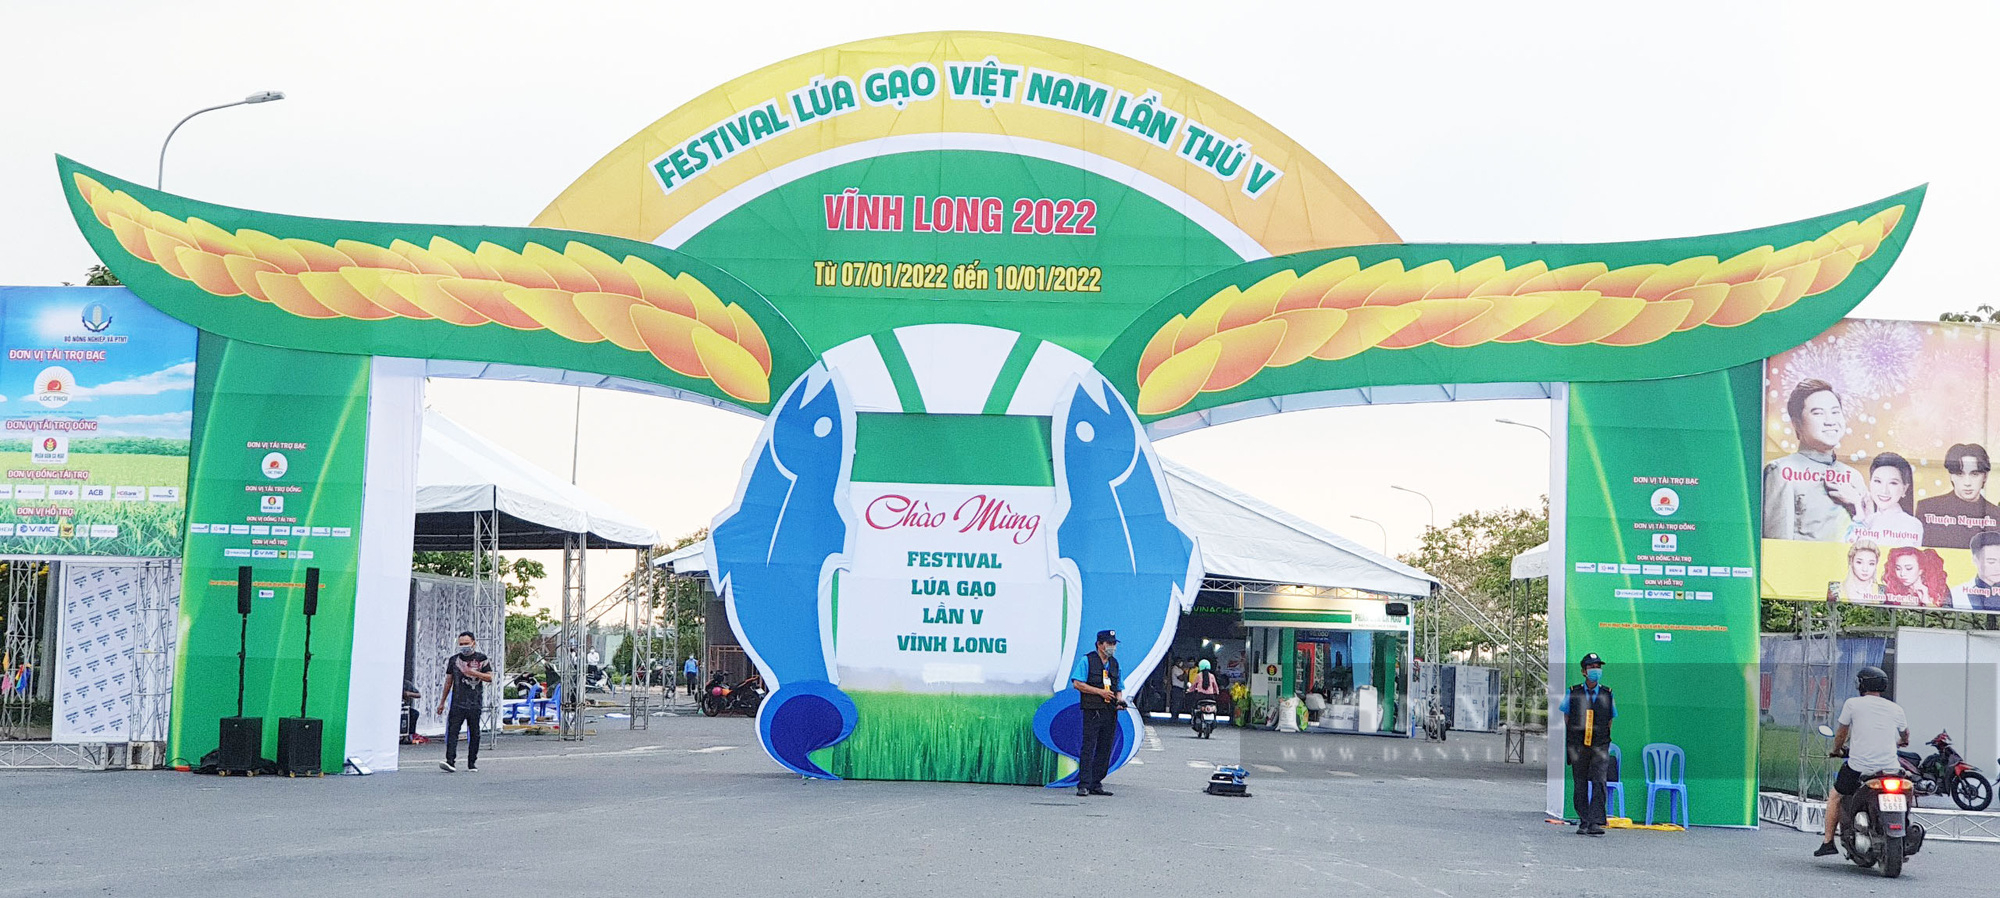 Tối nay khai mạc Festival lúa gạo Việt Nam lần thứ V - Ảnh 1.